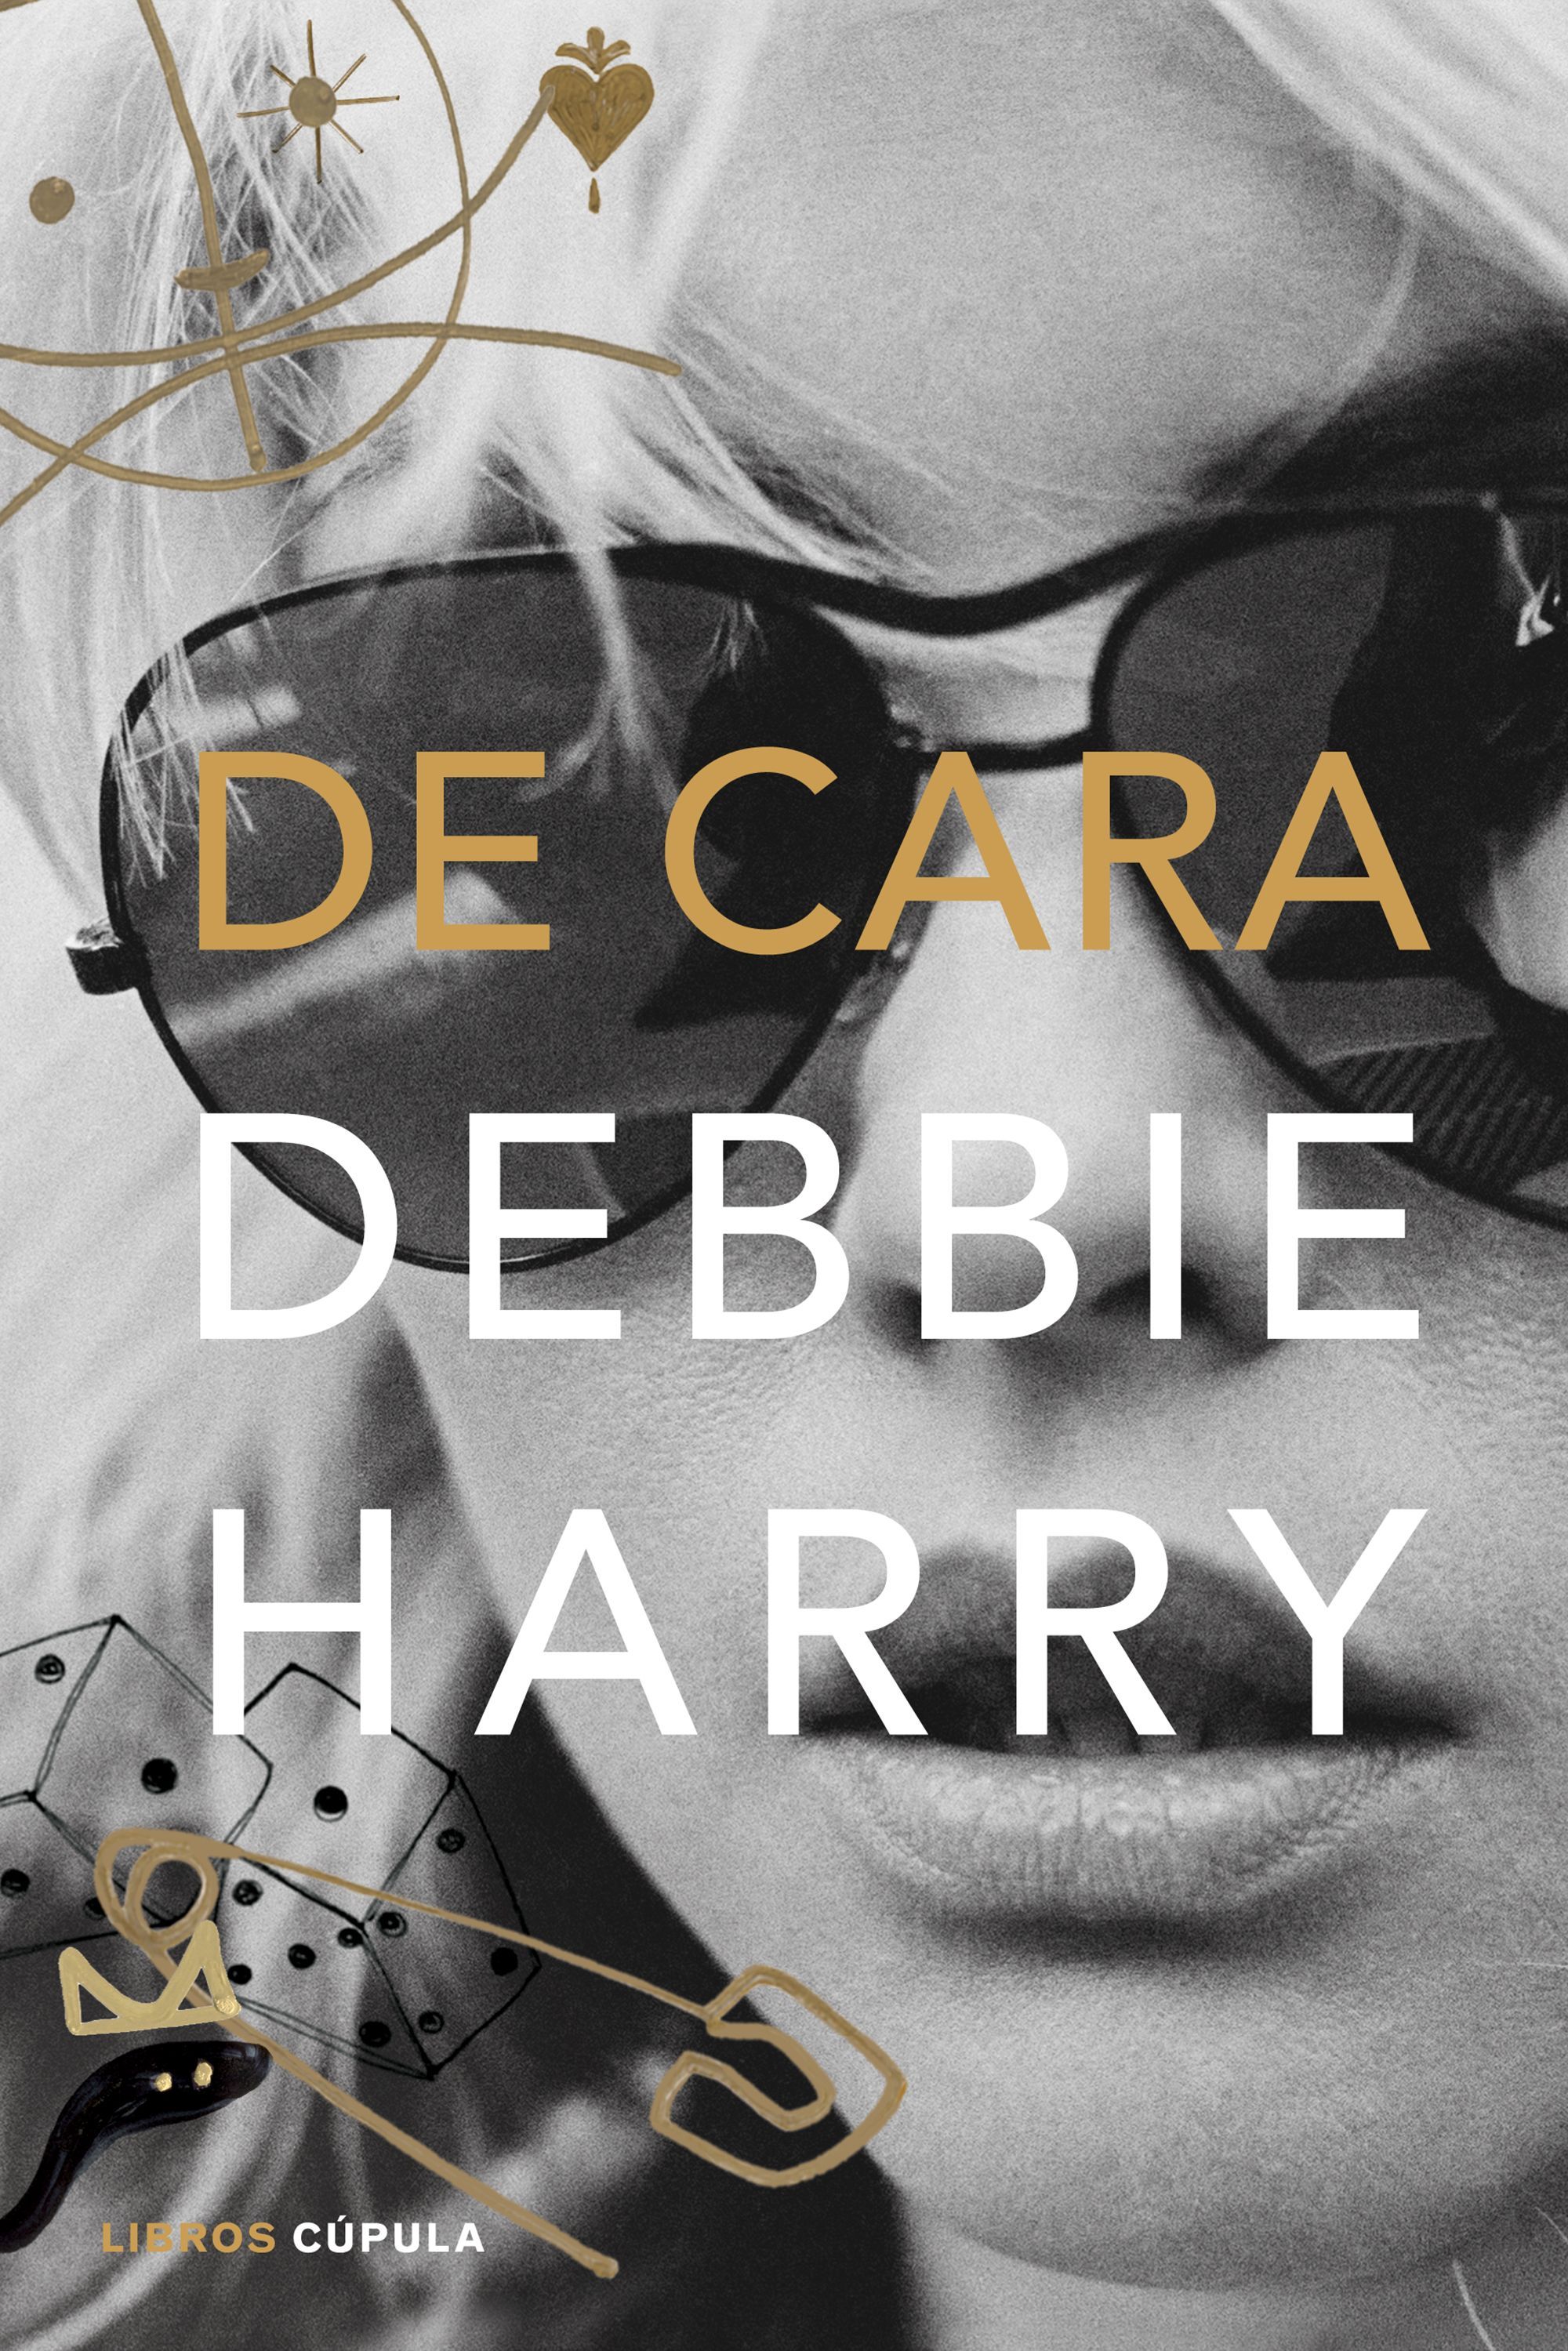 Debbie Harry, cantante de Blondie y una de las mujeres más influyentes del rock publica 'De cara'